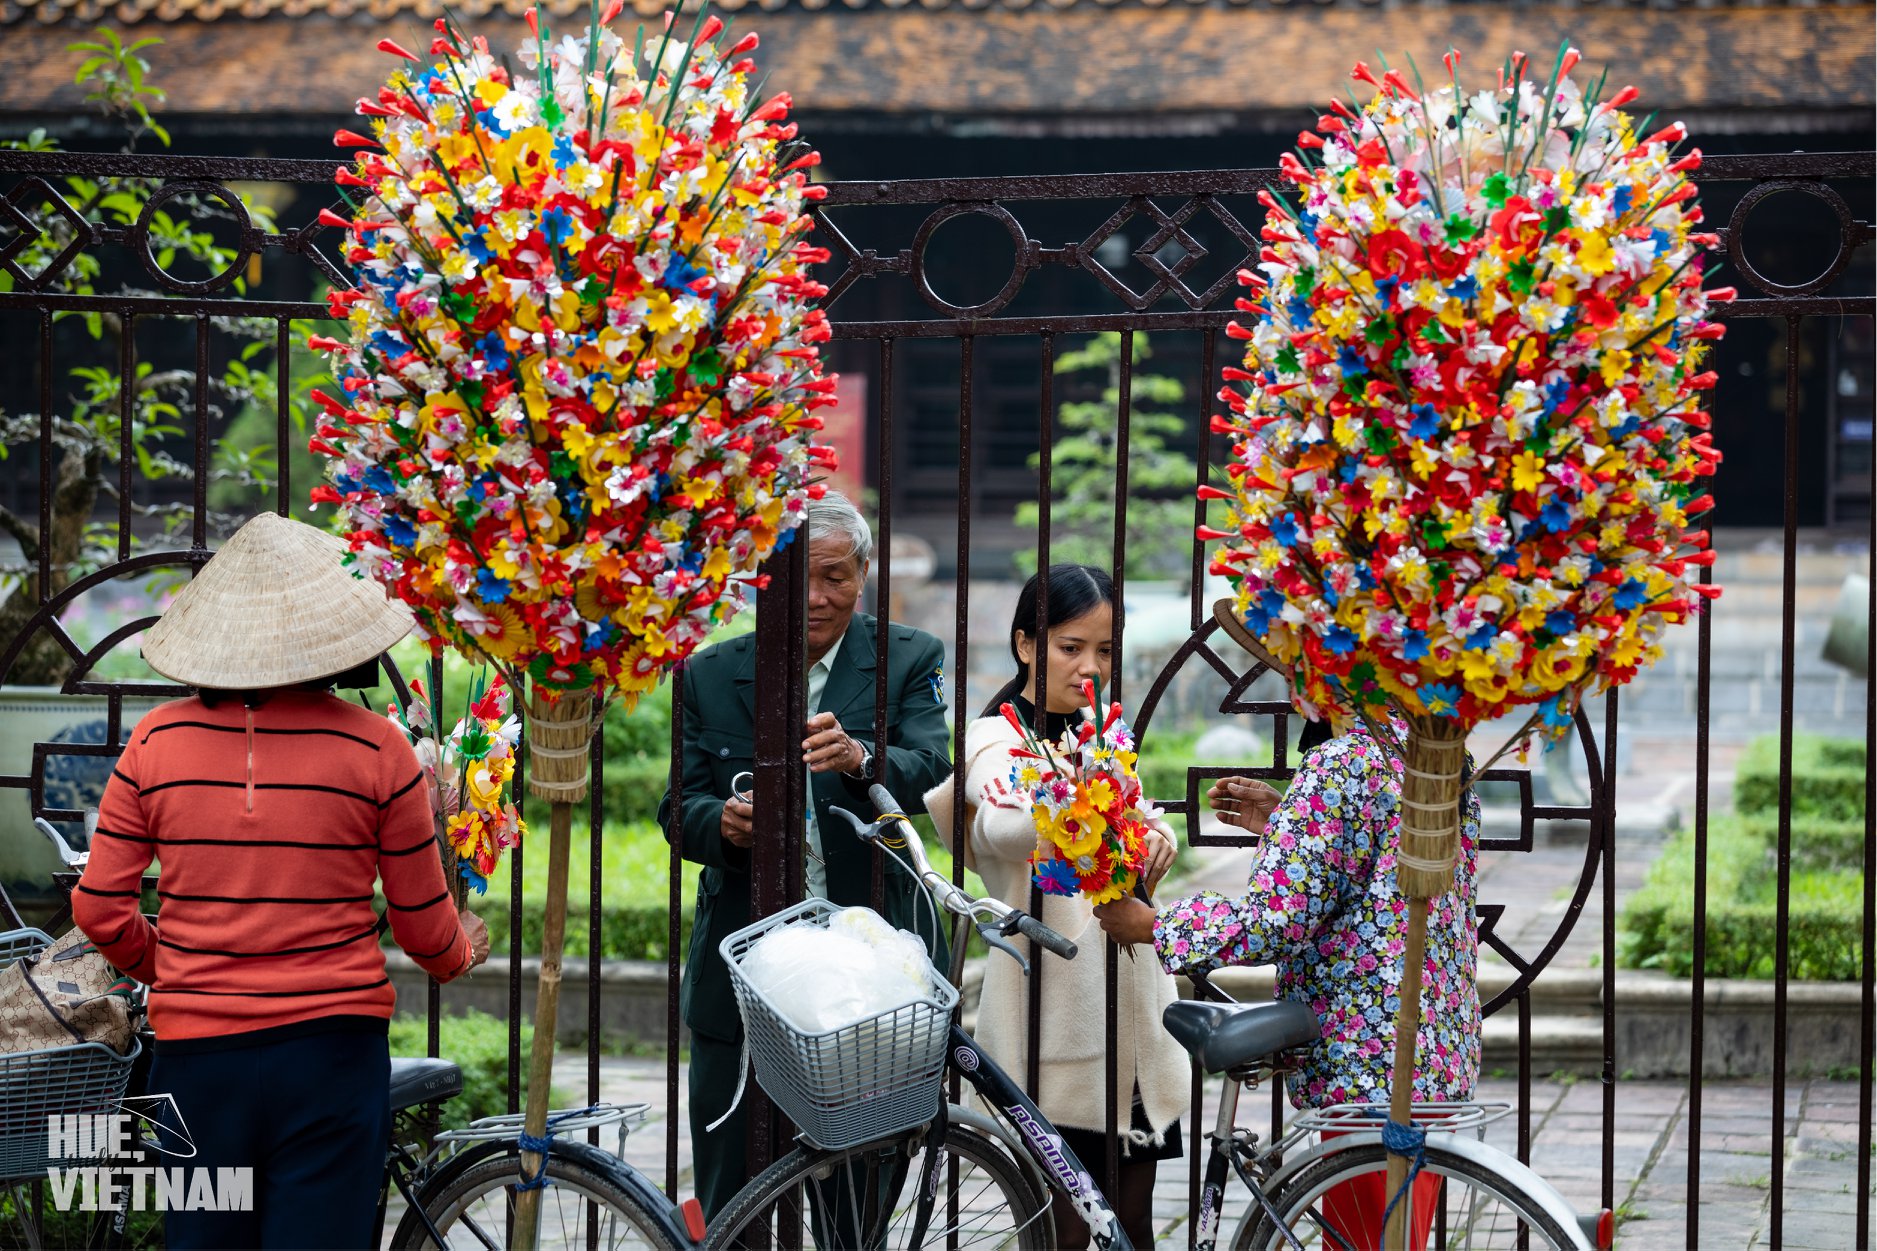 Hoa giấy là một trong những thứ không thể thiếu trên bàn thờ mỗi dịp Tết đến. Hình: Hue, truly Vietnam